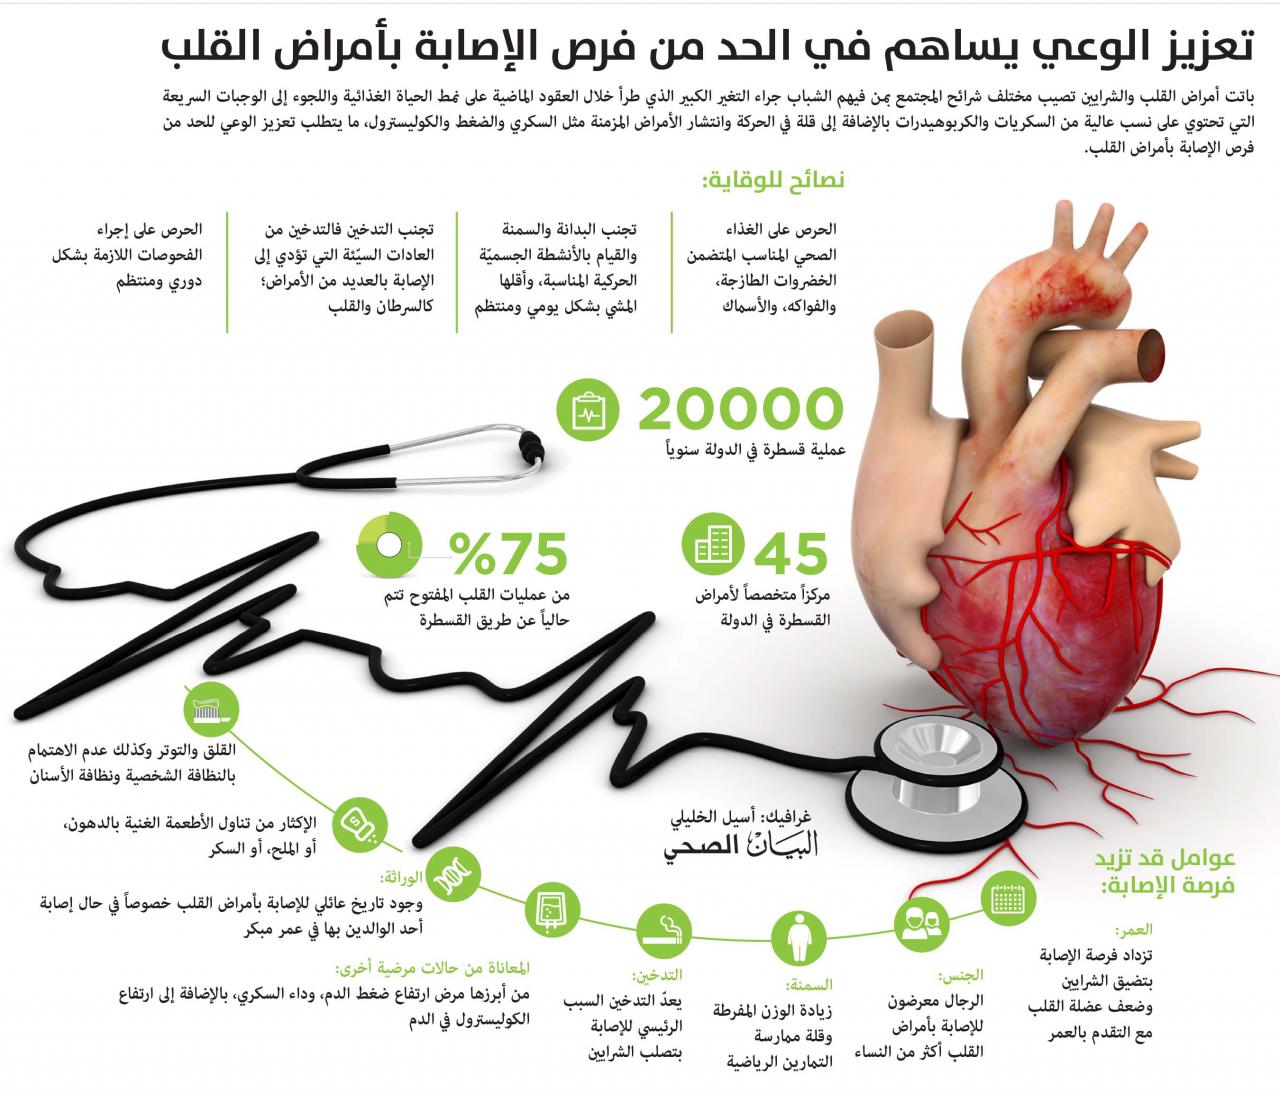 بحث عن امراض القلب , تعريف وانواع امراض القلب وعلاجاتها ابداع افكار